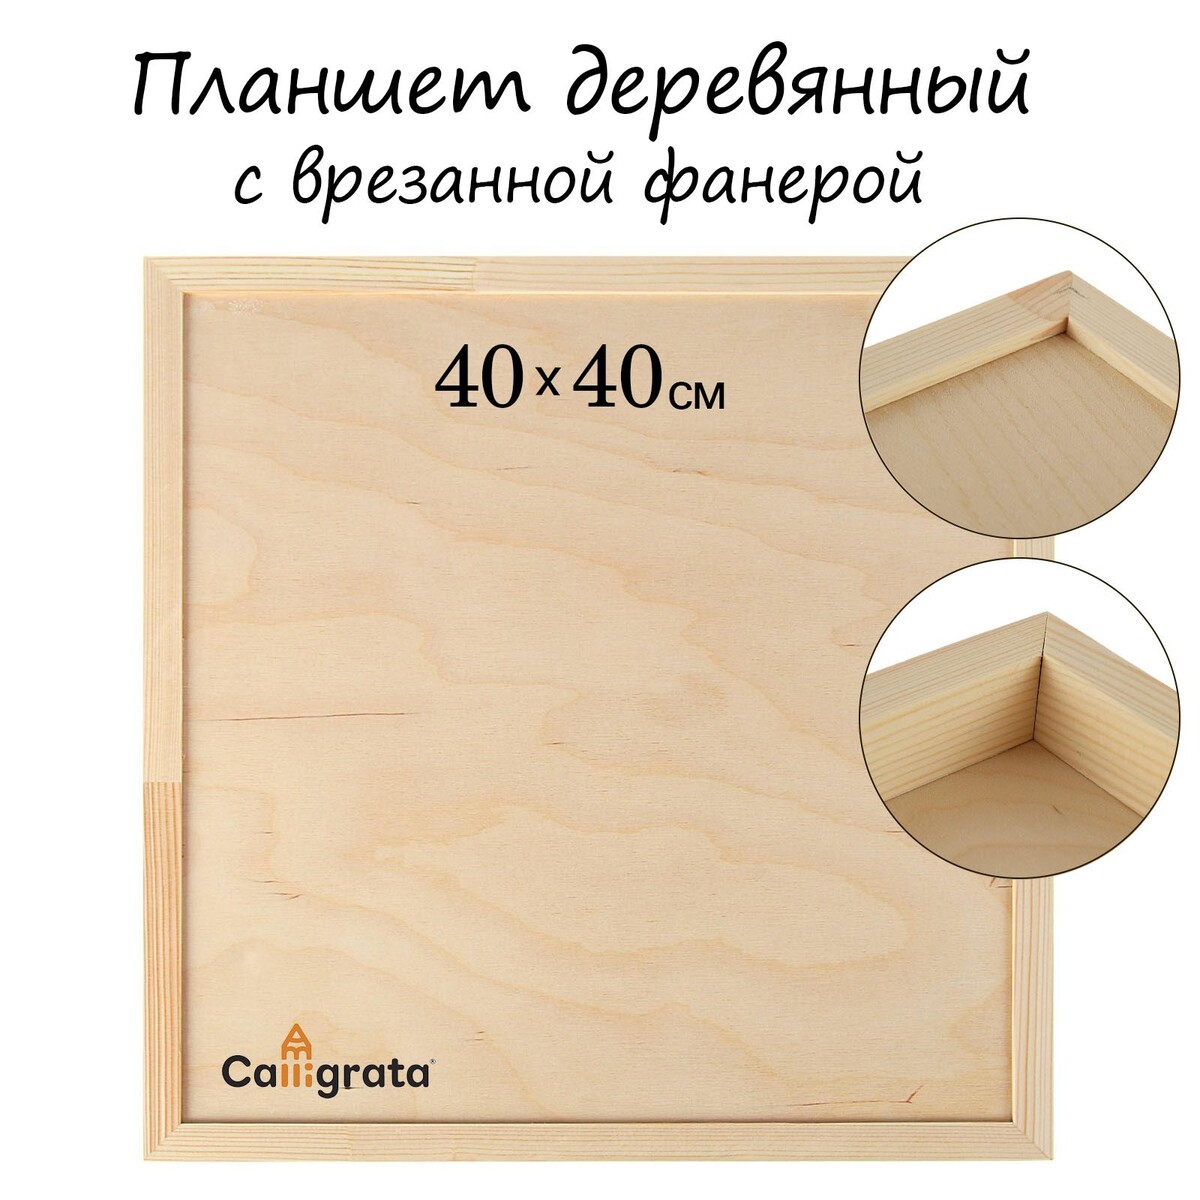 Планшет деревянный, с врезанной фанерой, 40 х 40 х 3,5 см, глубина 0.5 см, сосна глубина прыгун